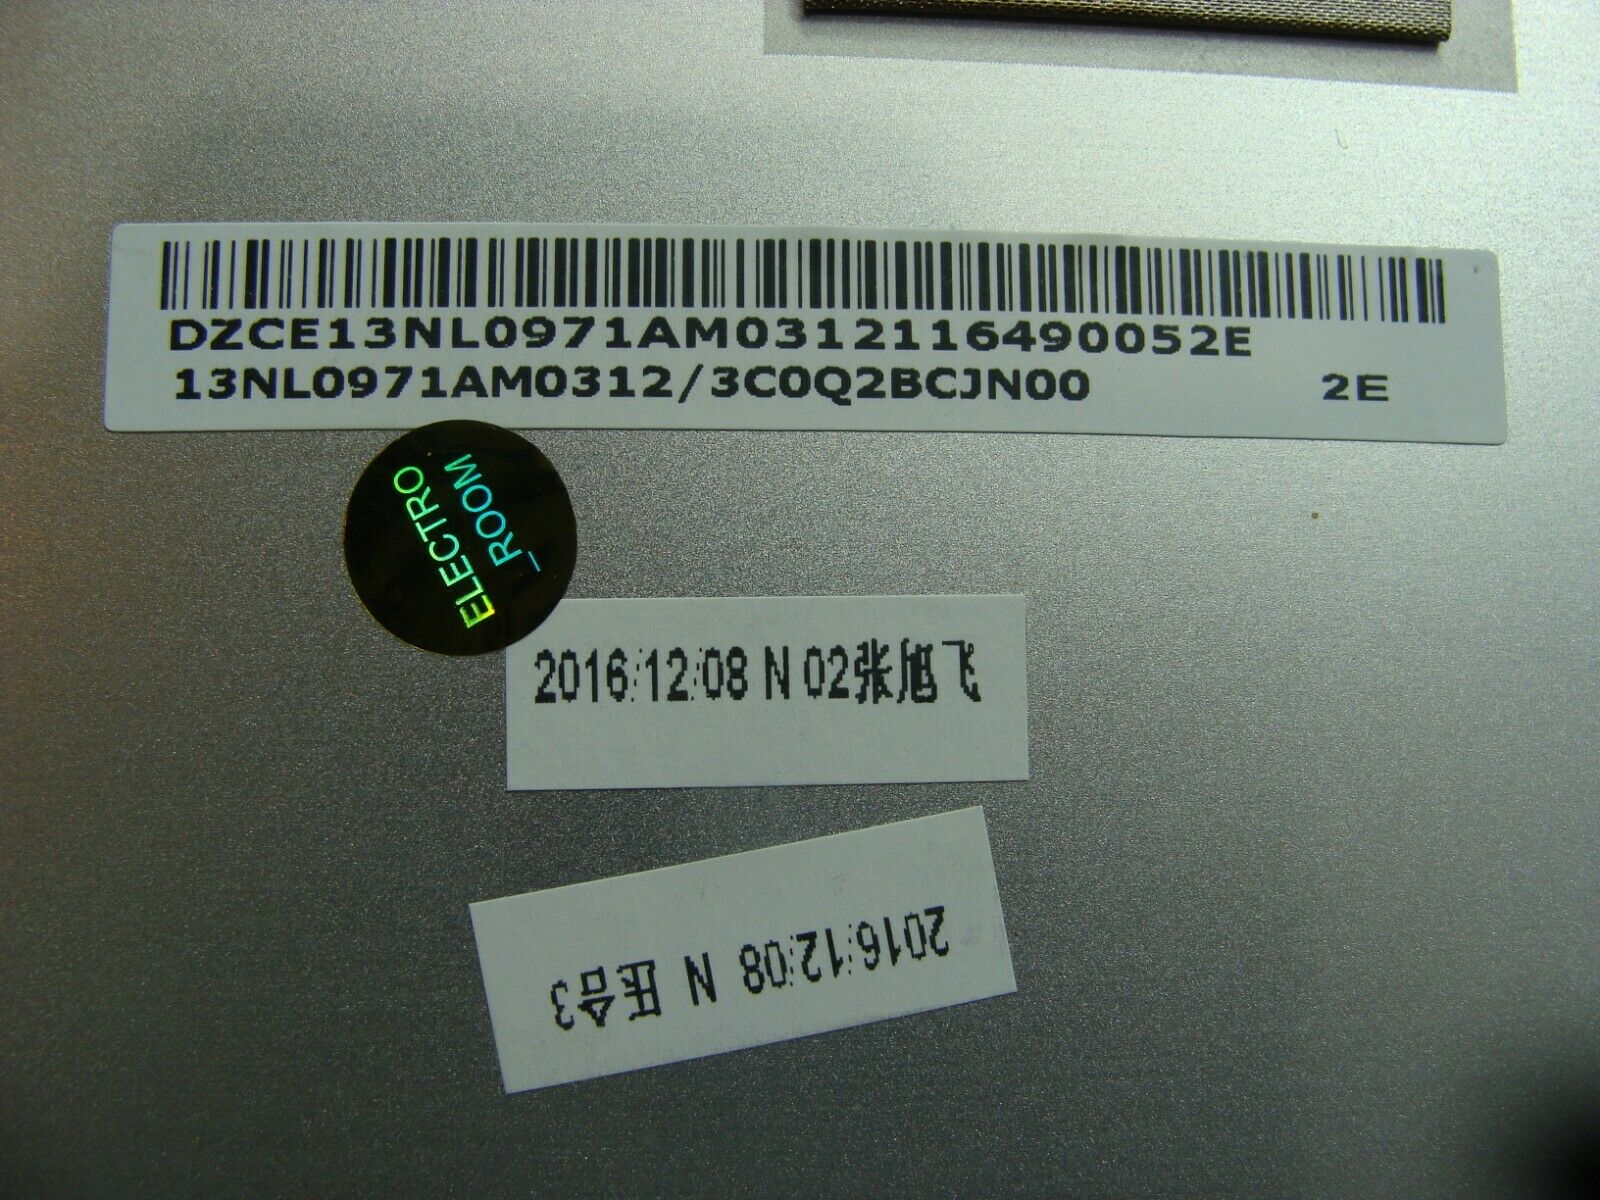 Asus Chromebook C100PA-RBRKT07 10.1